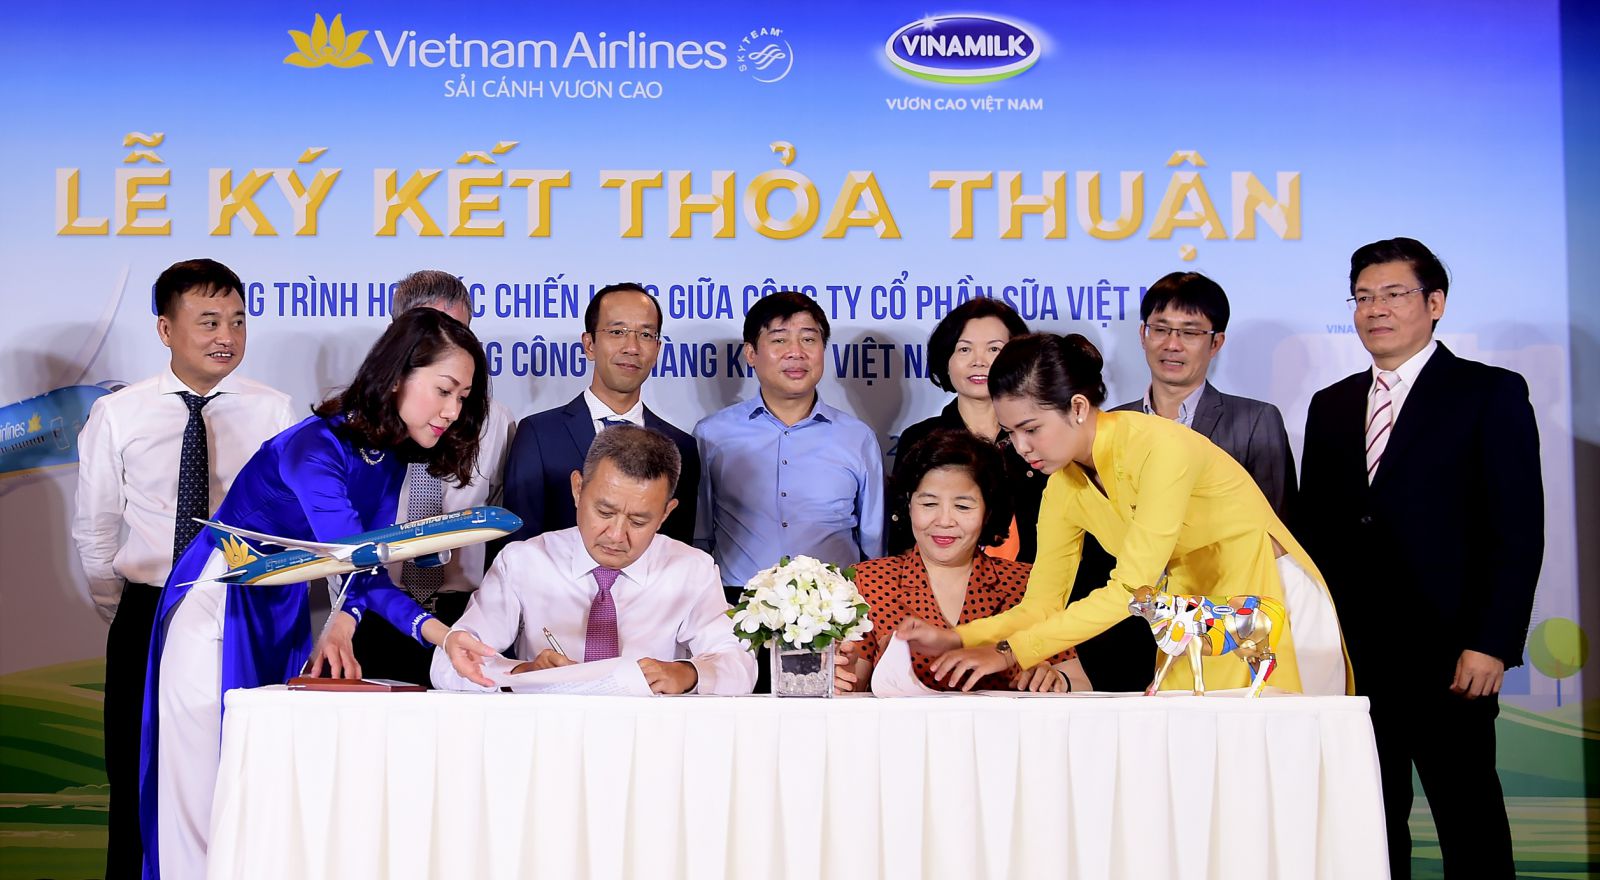 Ông Dương Trí Thành - Tổng Giám đốc Vietnam Airlines (trái) và bà Mai Kiều Liên - Tổng Giám đốc Vinamilk (phải) ký kết thỏa thuận hợp tác chiến lược.